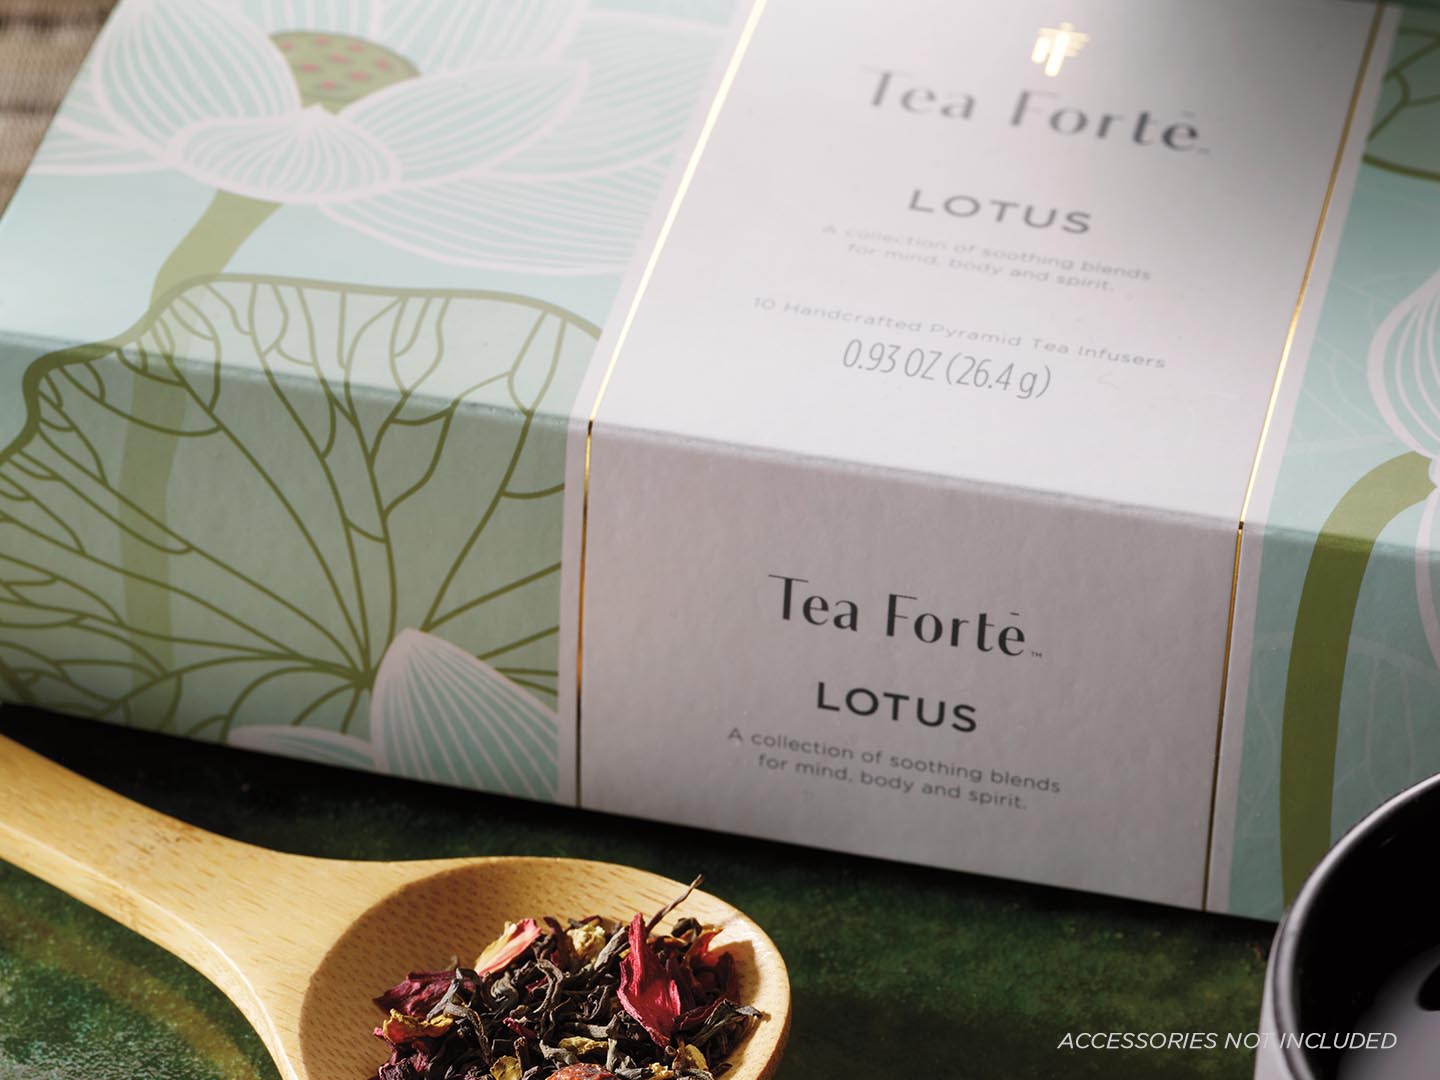 Lotus tea assortment in a 10 count petite presentation box - closeup of lid